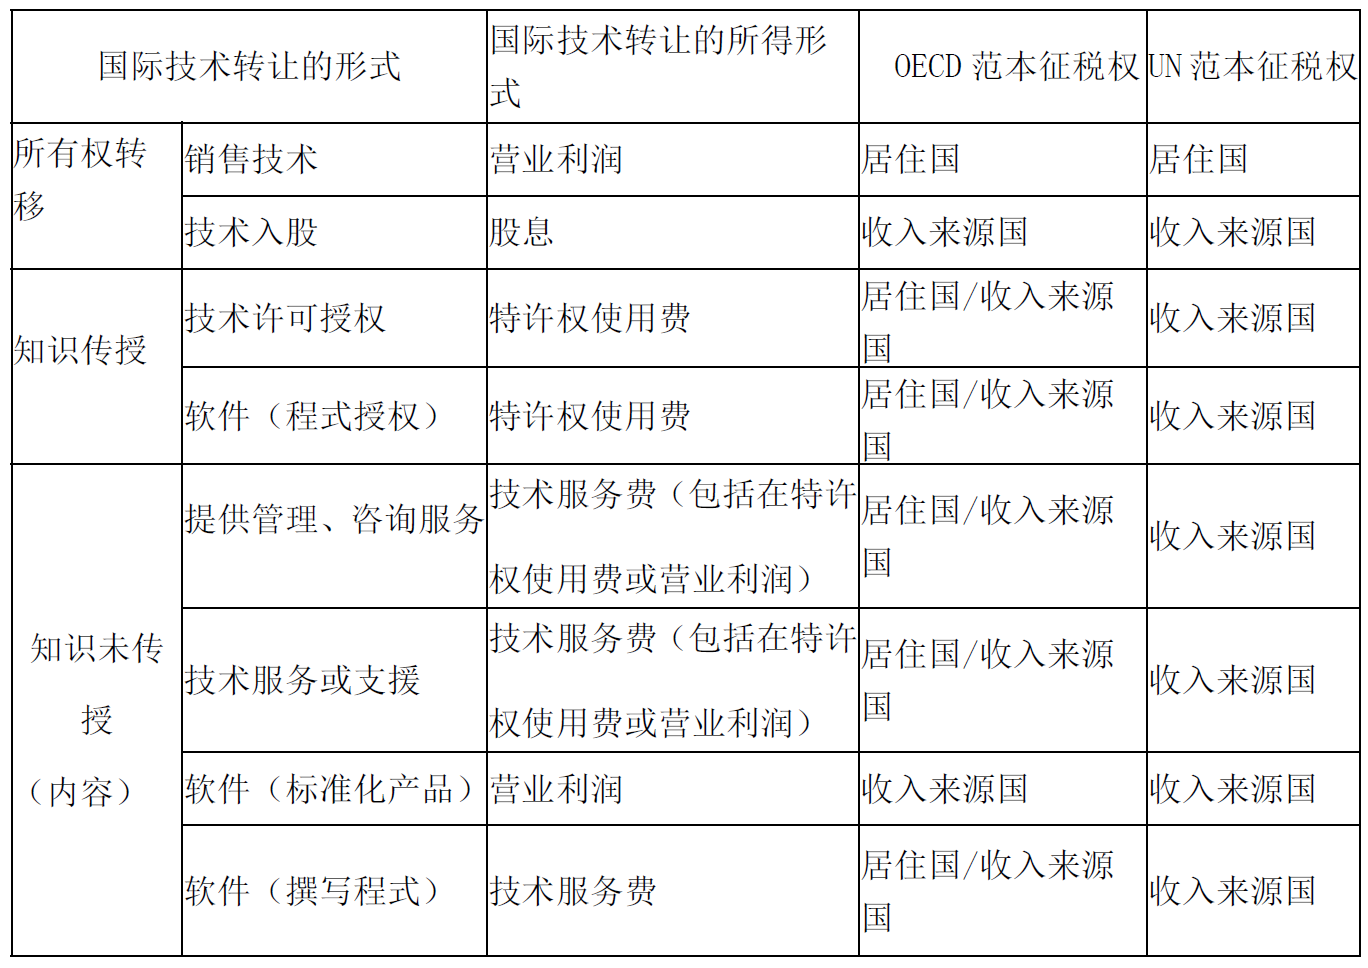 跨境知识产权交易中国际技术转让制度的借鉴（下）